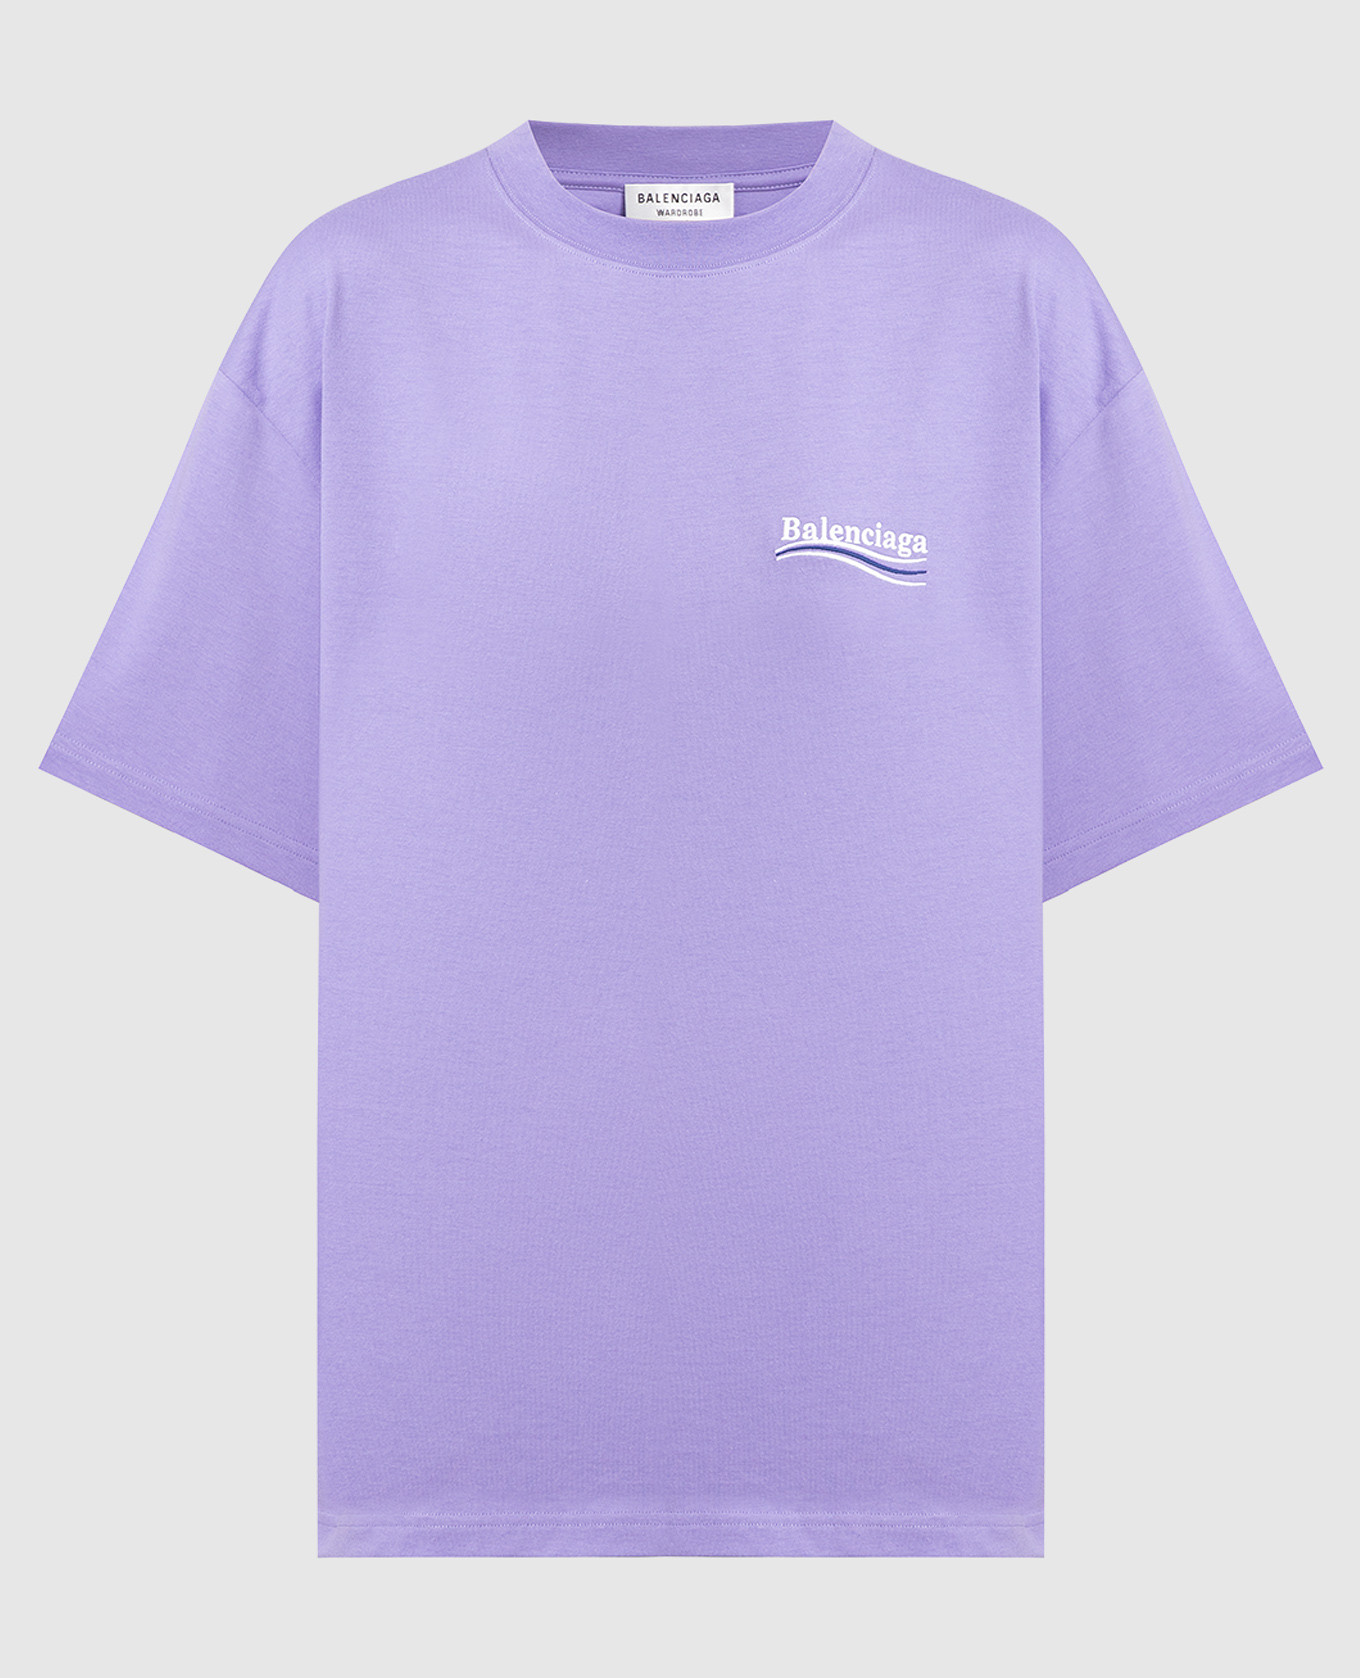 Фиолетовая футболка с вышивкой логотипа